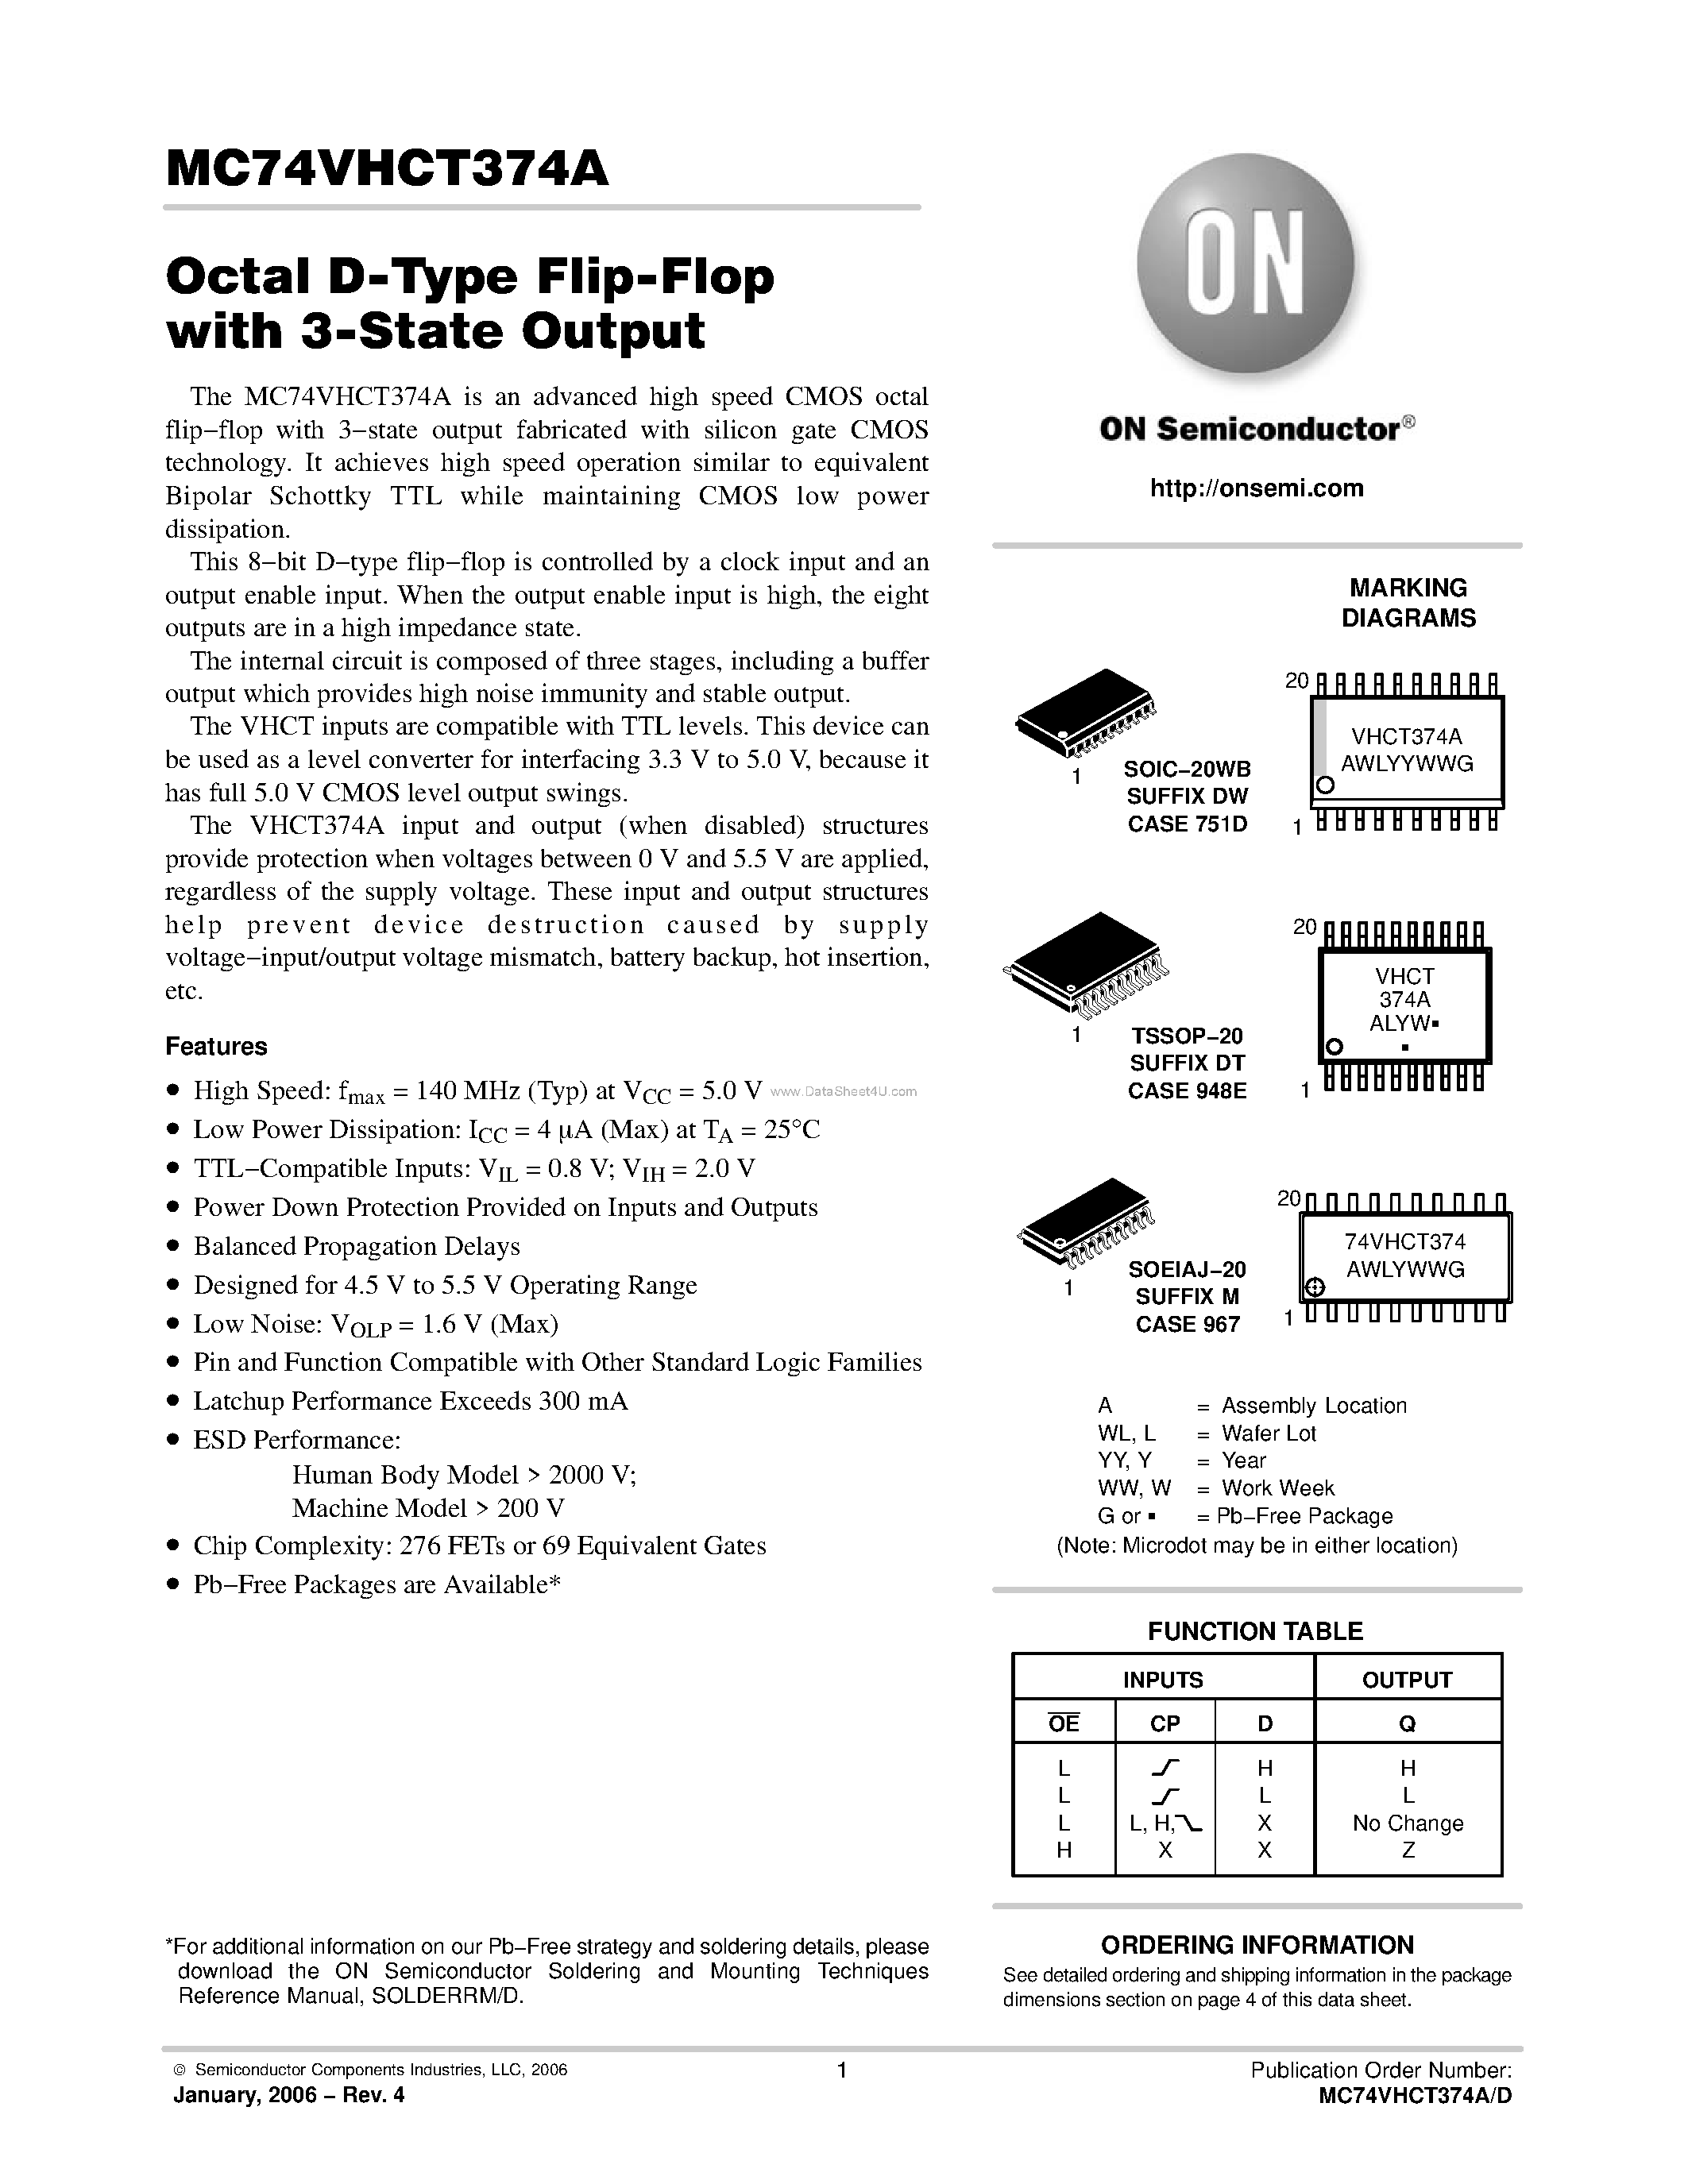 Datasheet MC74VHCT374A - Octal D-Type Flip-Flop page 1